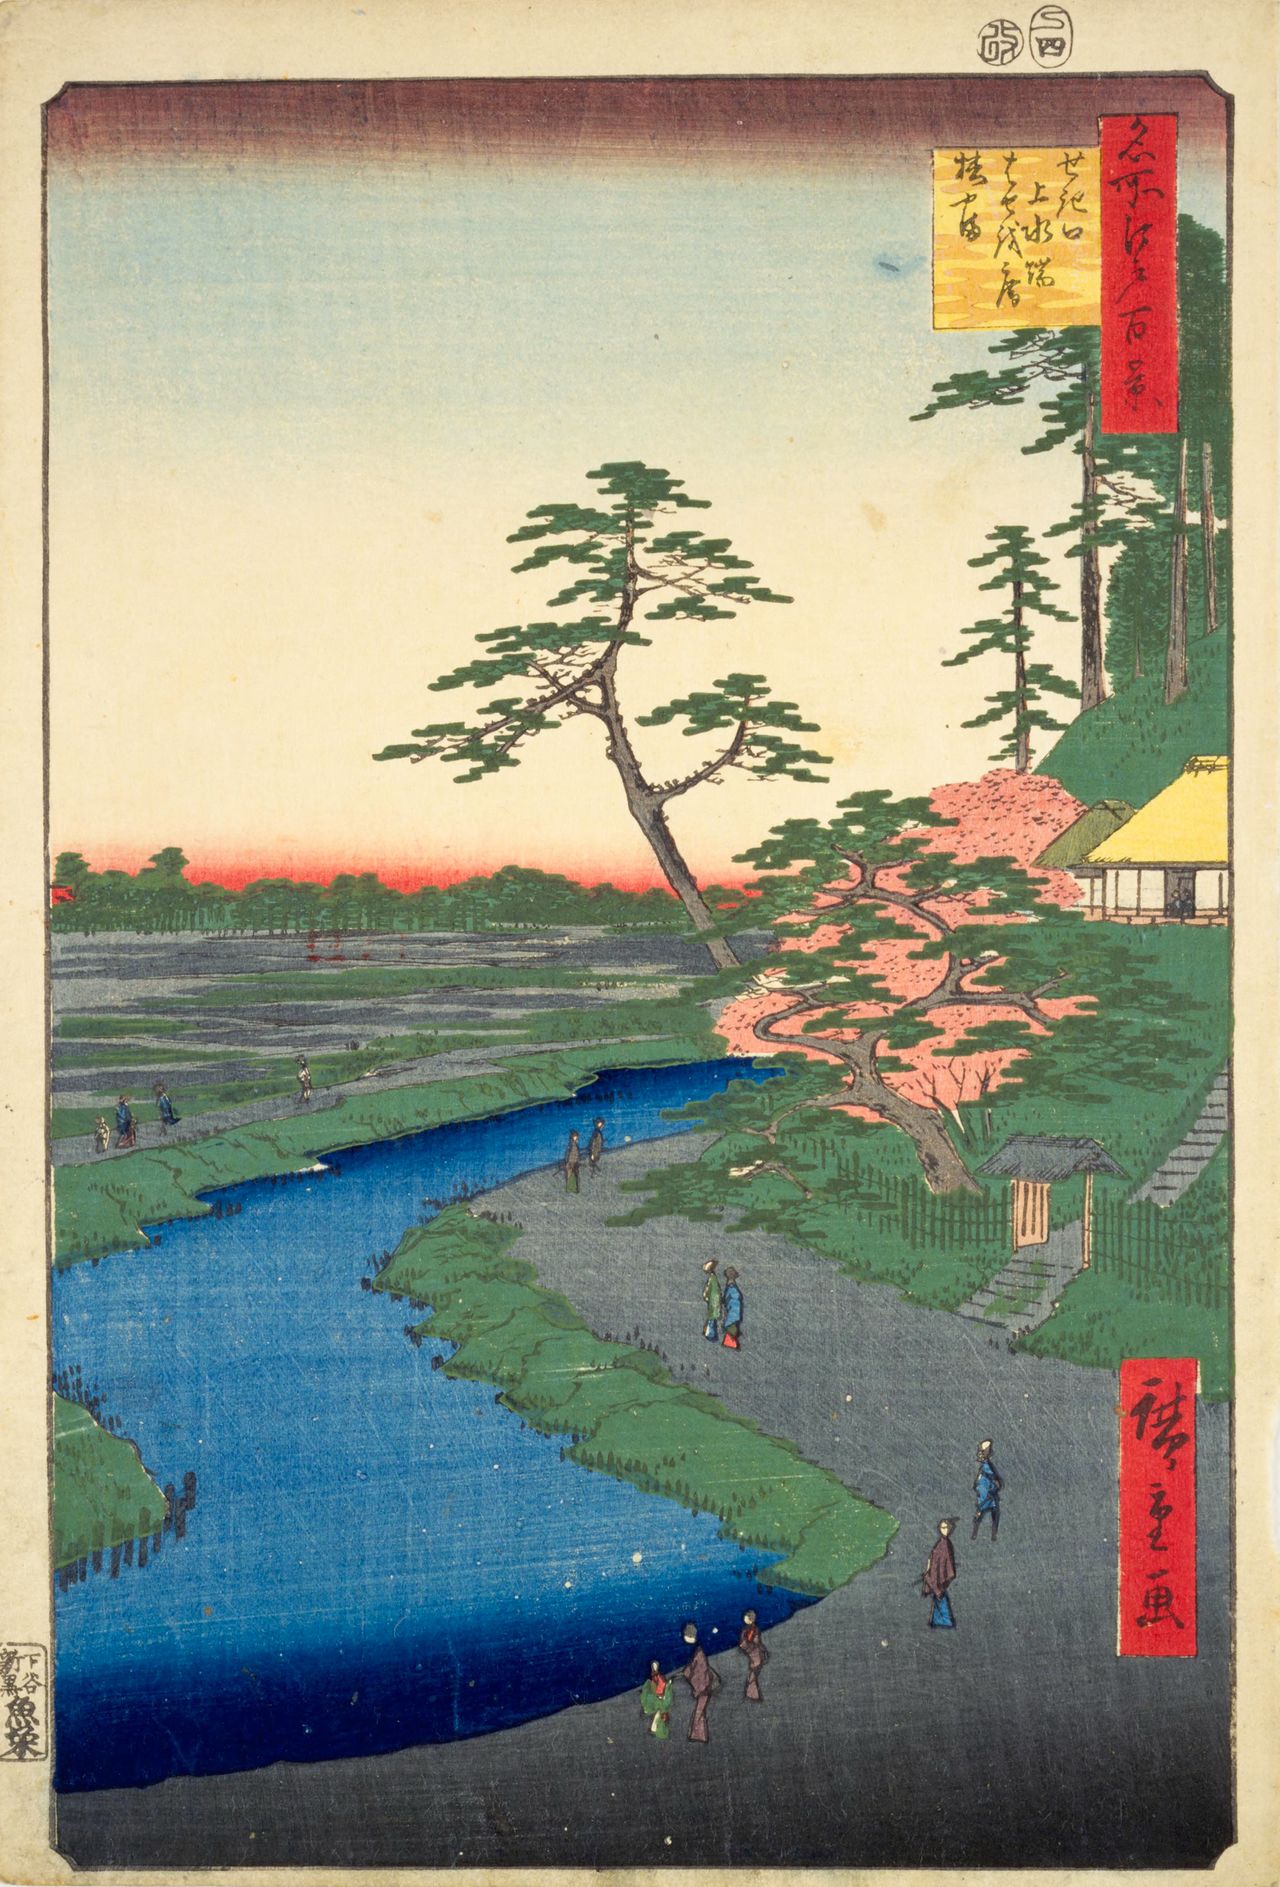 L’ermitage de Bashô et la colline aux camélias près de l'aqueduc à Sekiguchi par Utagawa Hiroshige. Cet endroit, situé près de l'hôtel Chinzansô, existe encore aujourd’hui. Il porte maintenant le nom de Sekiguchi Bashô-an (avec l'aimable autorisation de la bibliothèque de la Diète nationale)